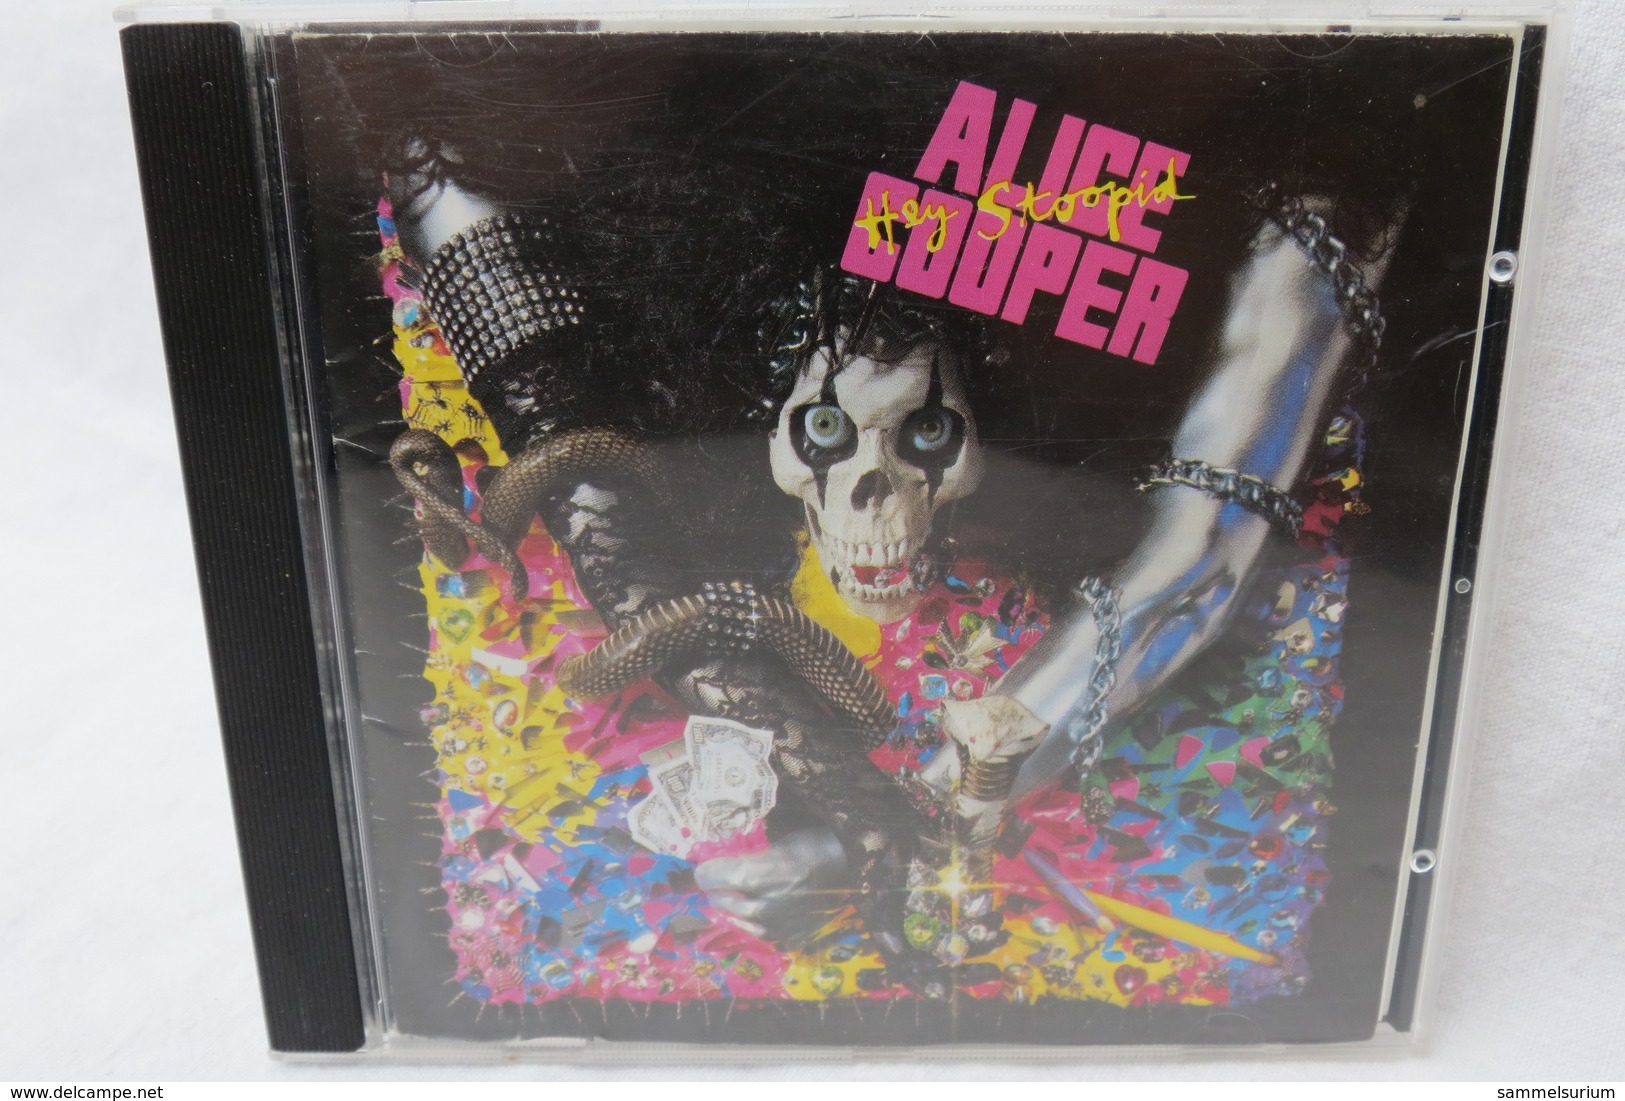 CD "Alice Cooper" Hey Stoopid - Hard Rock & Metal